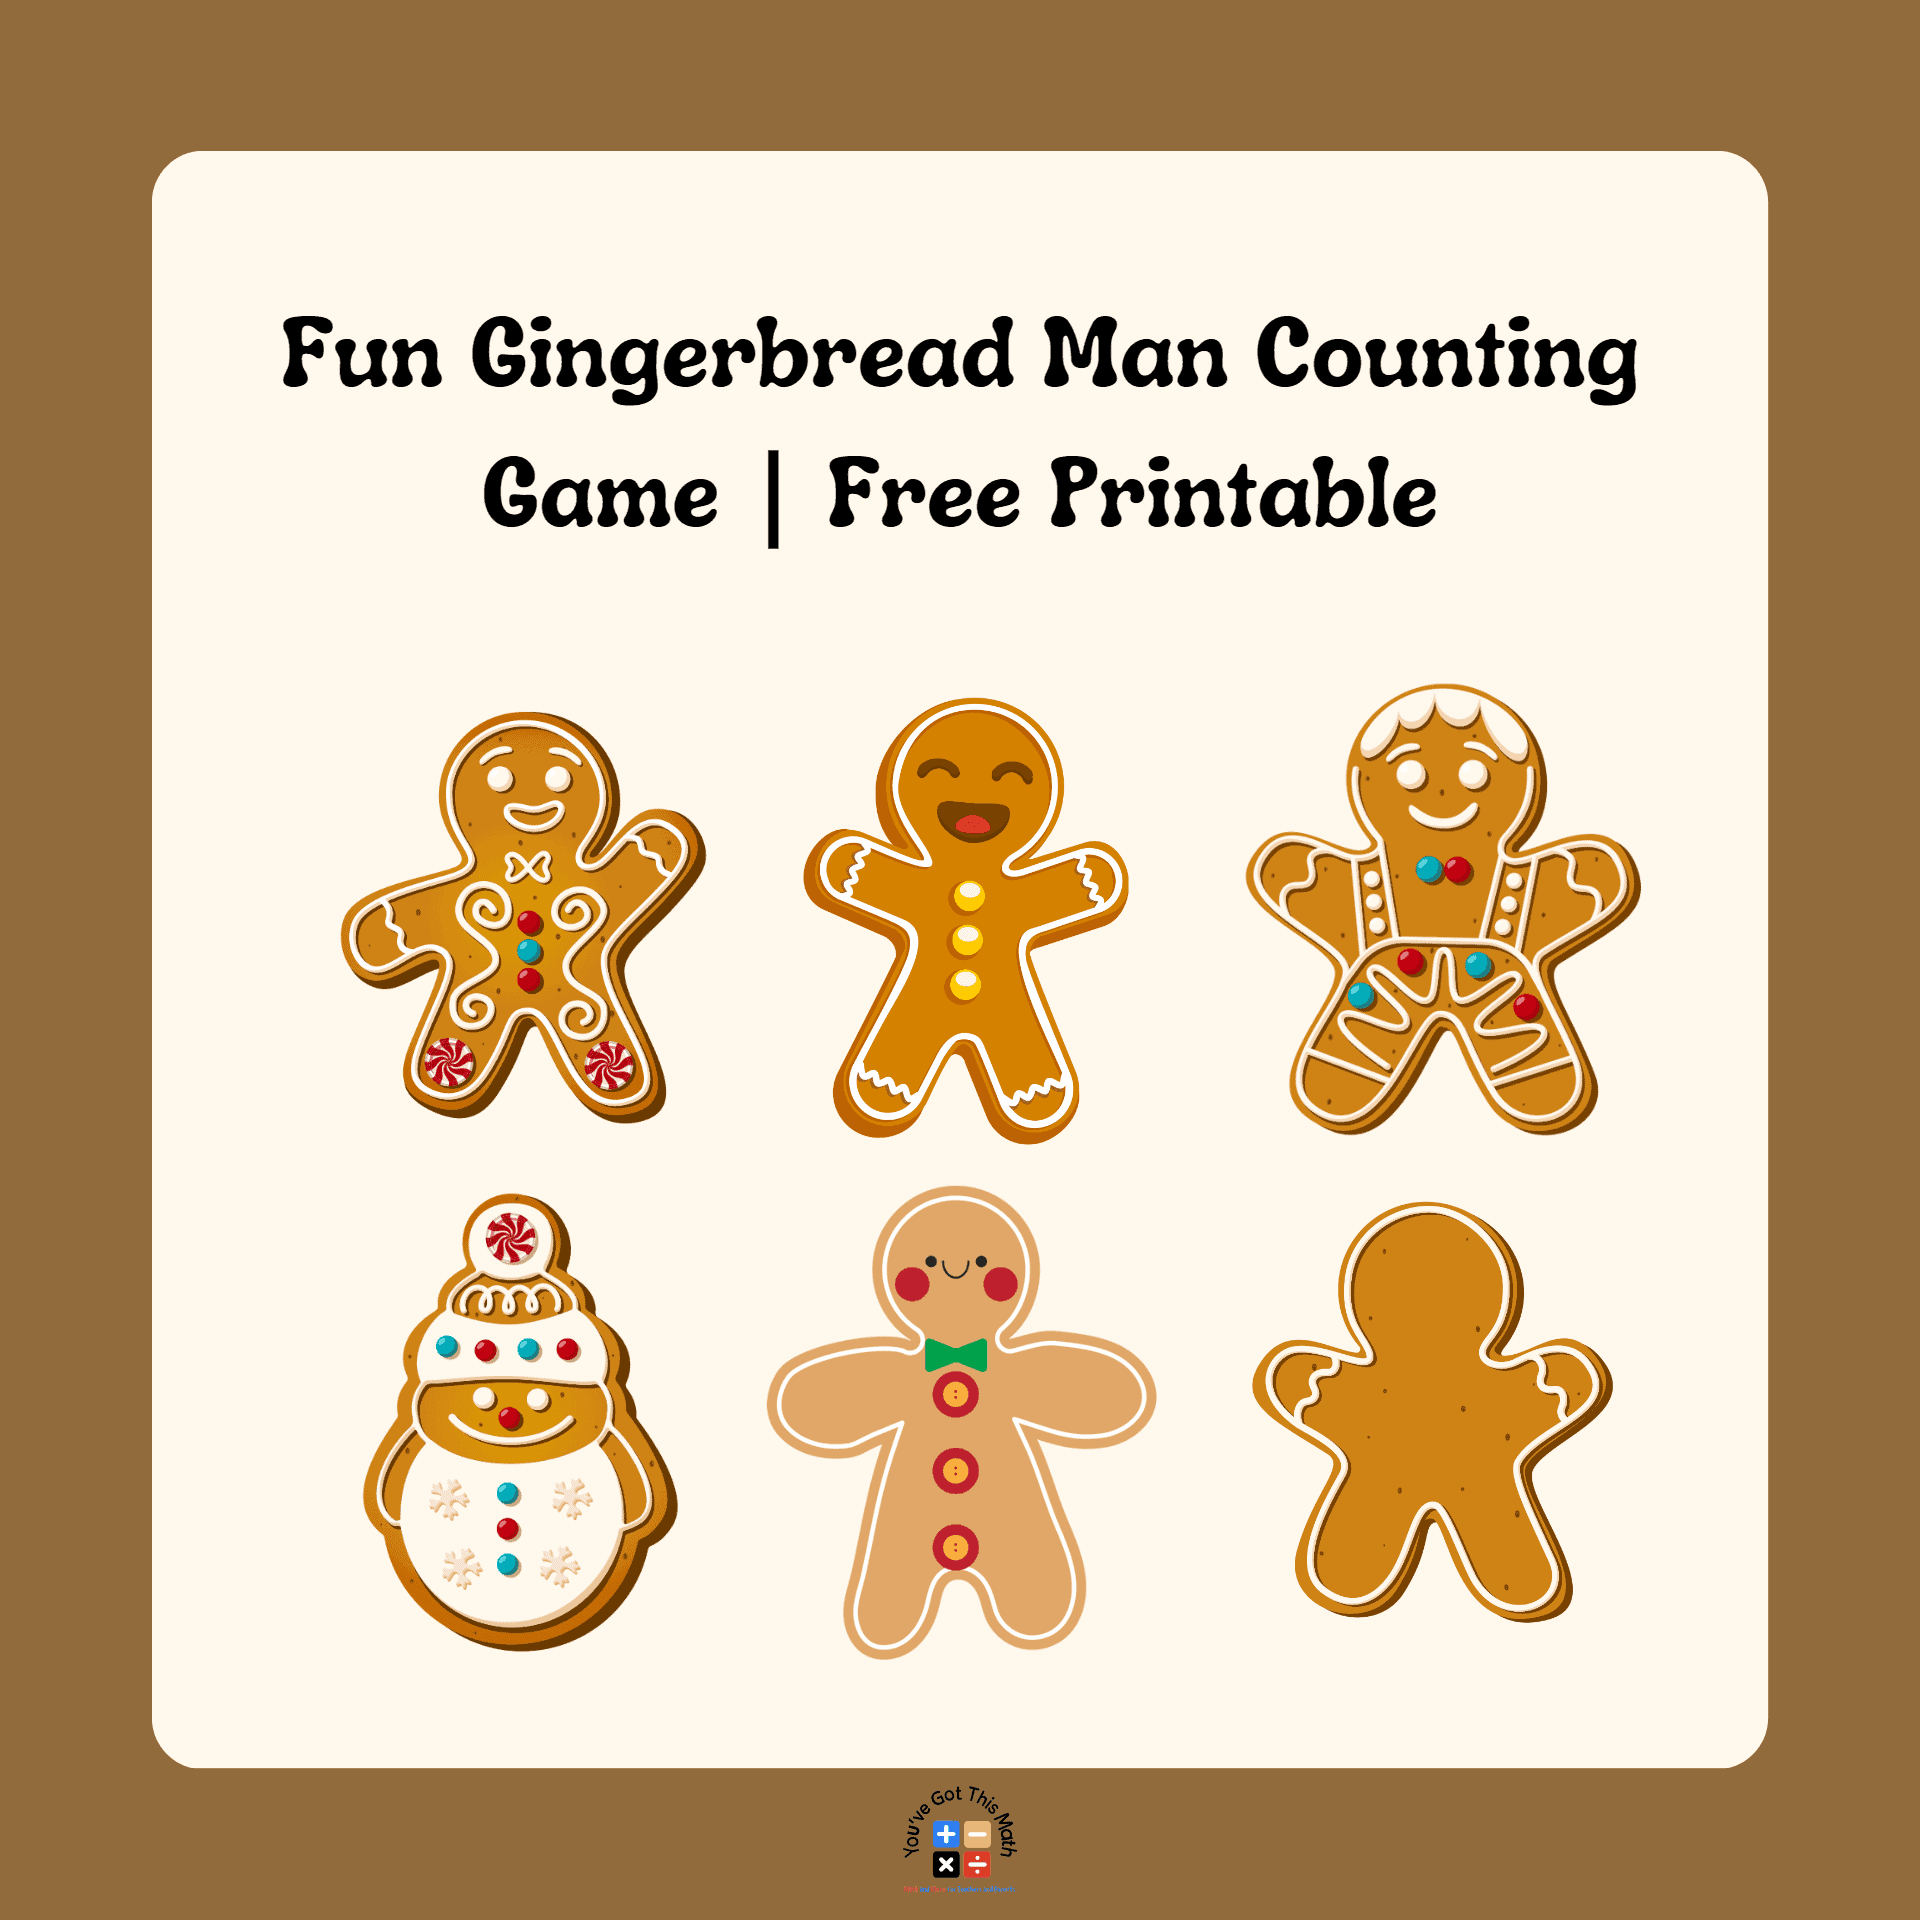 Fun Gingerbread Man Counting Game